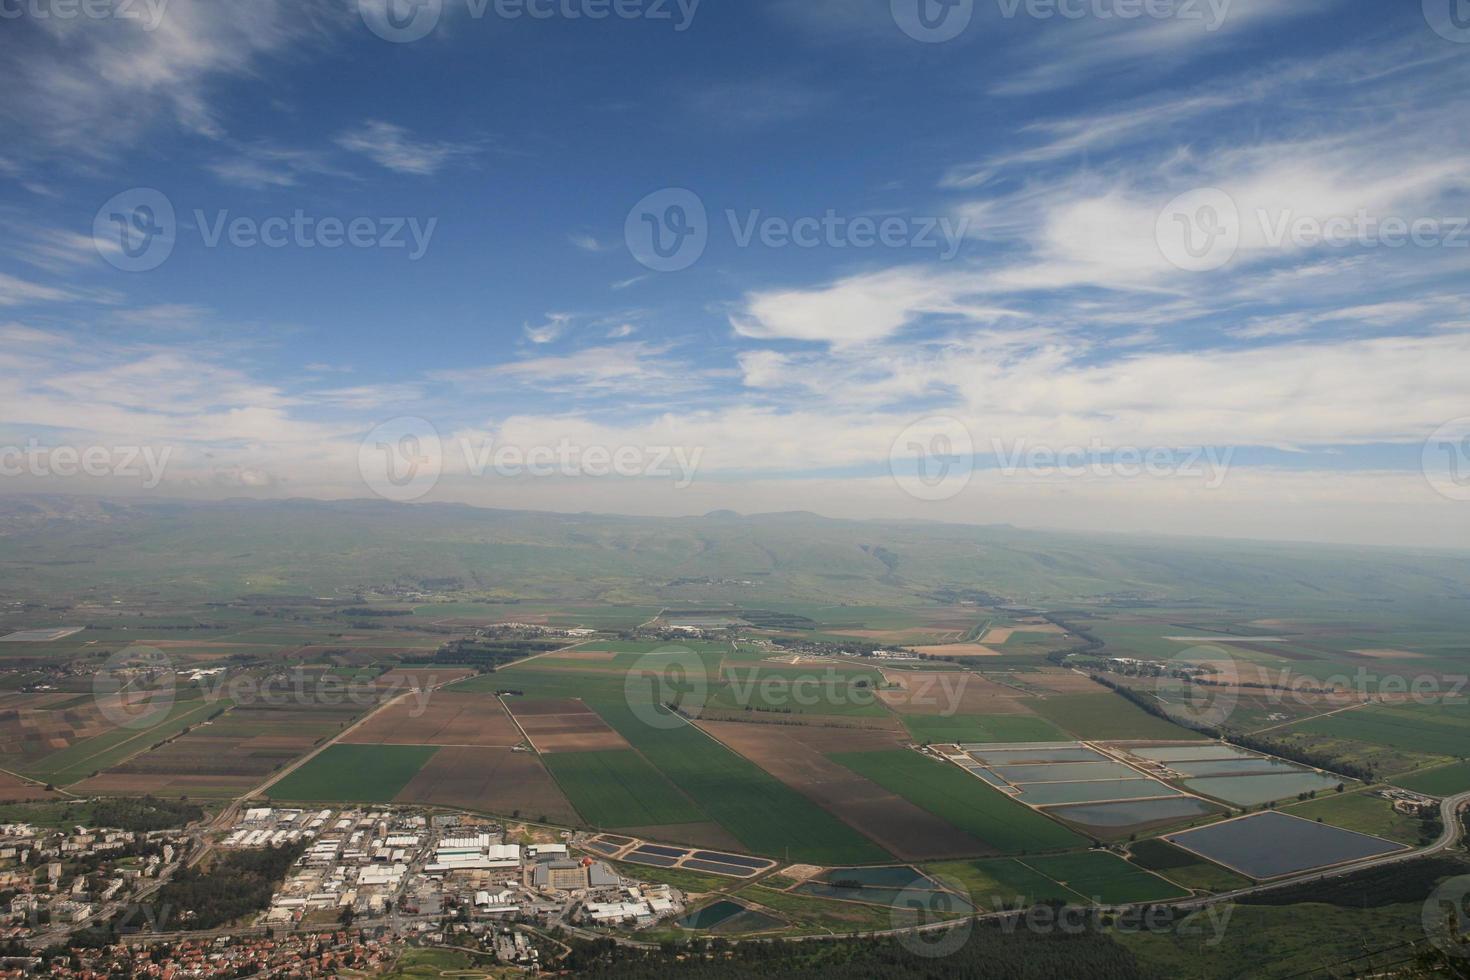 verbazingwekkende landschappen van Israël, uitzicht op het heilige land foto